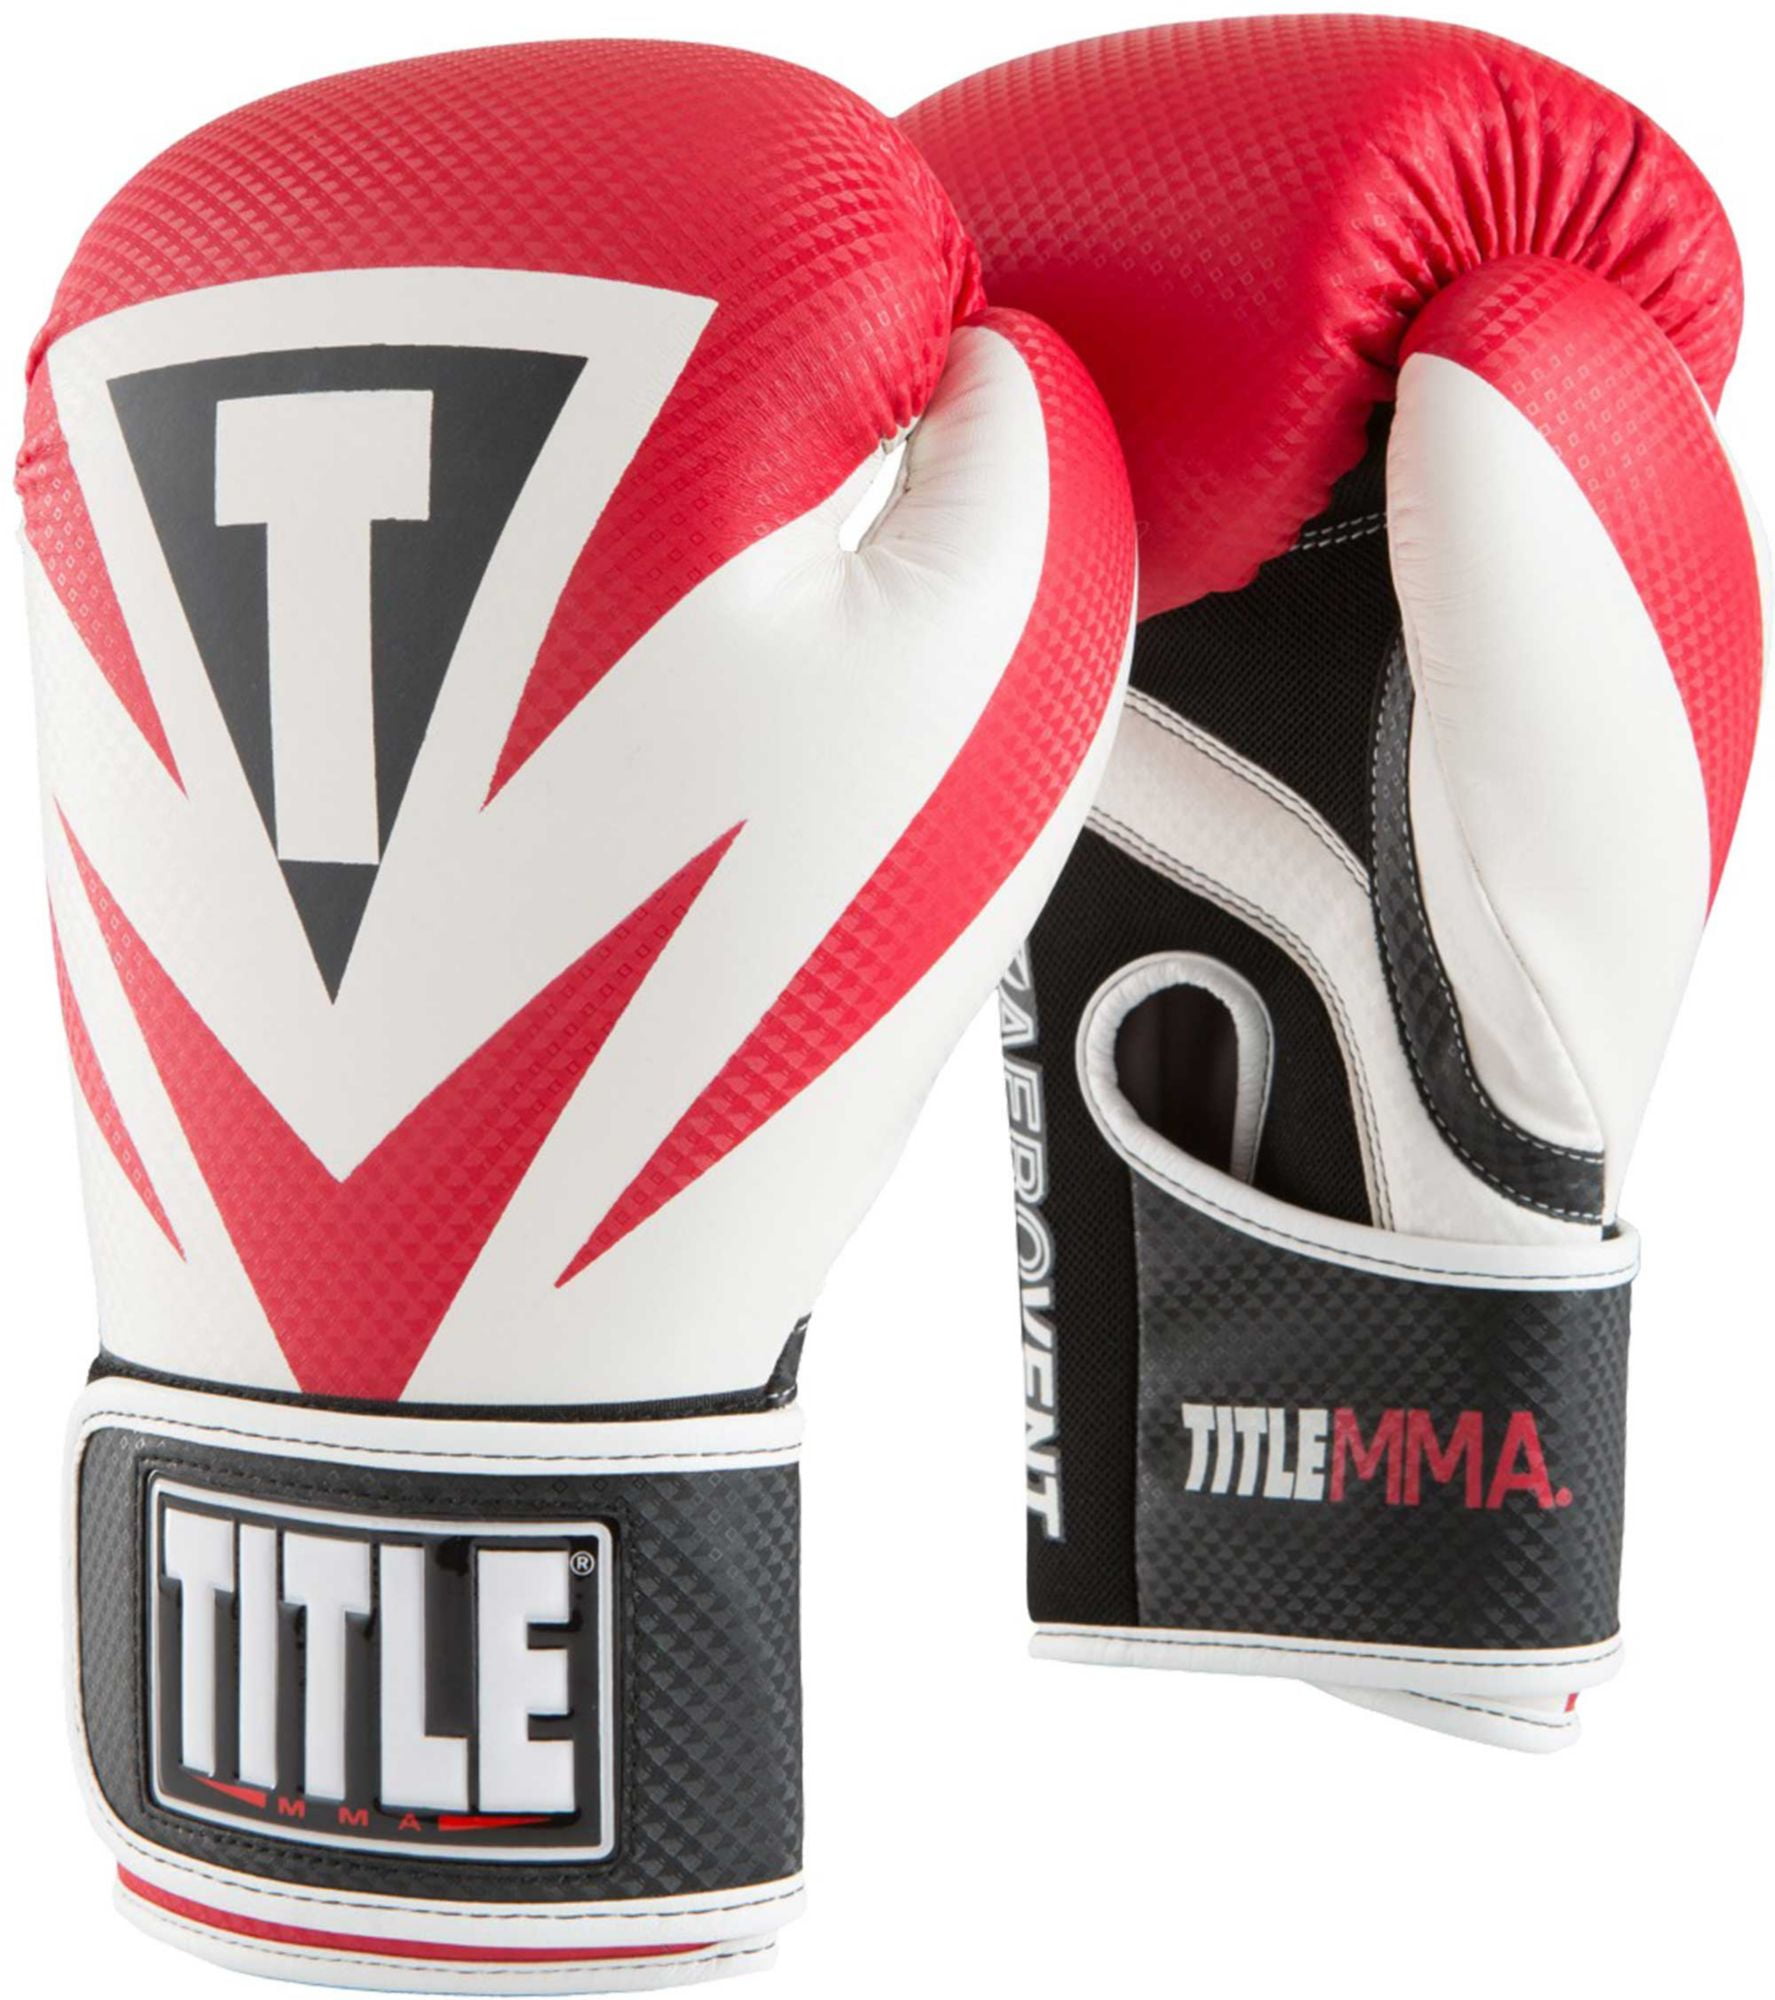 Title MMA перчатки. Перчатки ММА тренировочные. Перчатки для бокса title. Американские боксерские перчатки. Tactic boxing